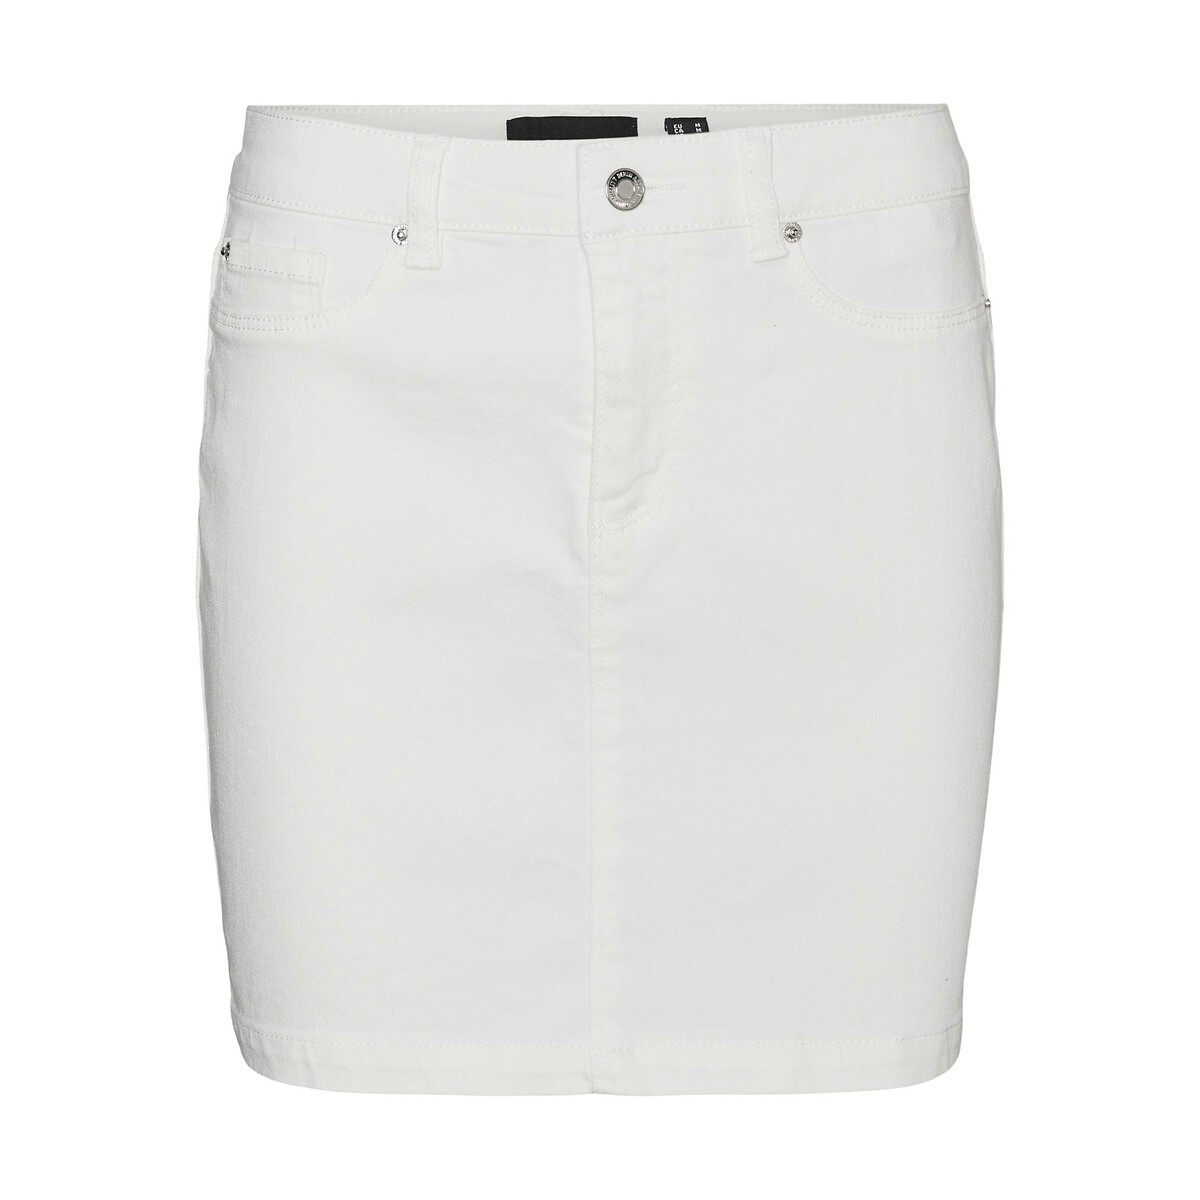 Юбка короткая из джинсовой ткани  M белый LaRedoute, размер M - фото 5